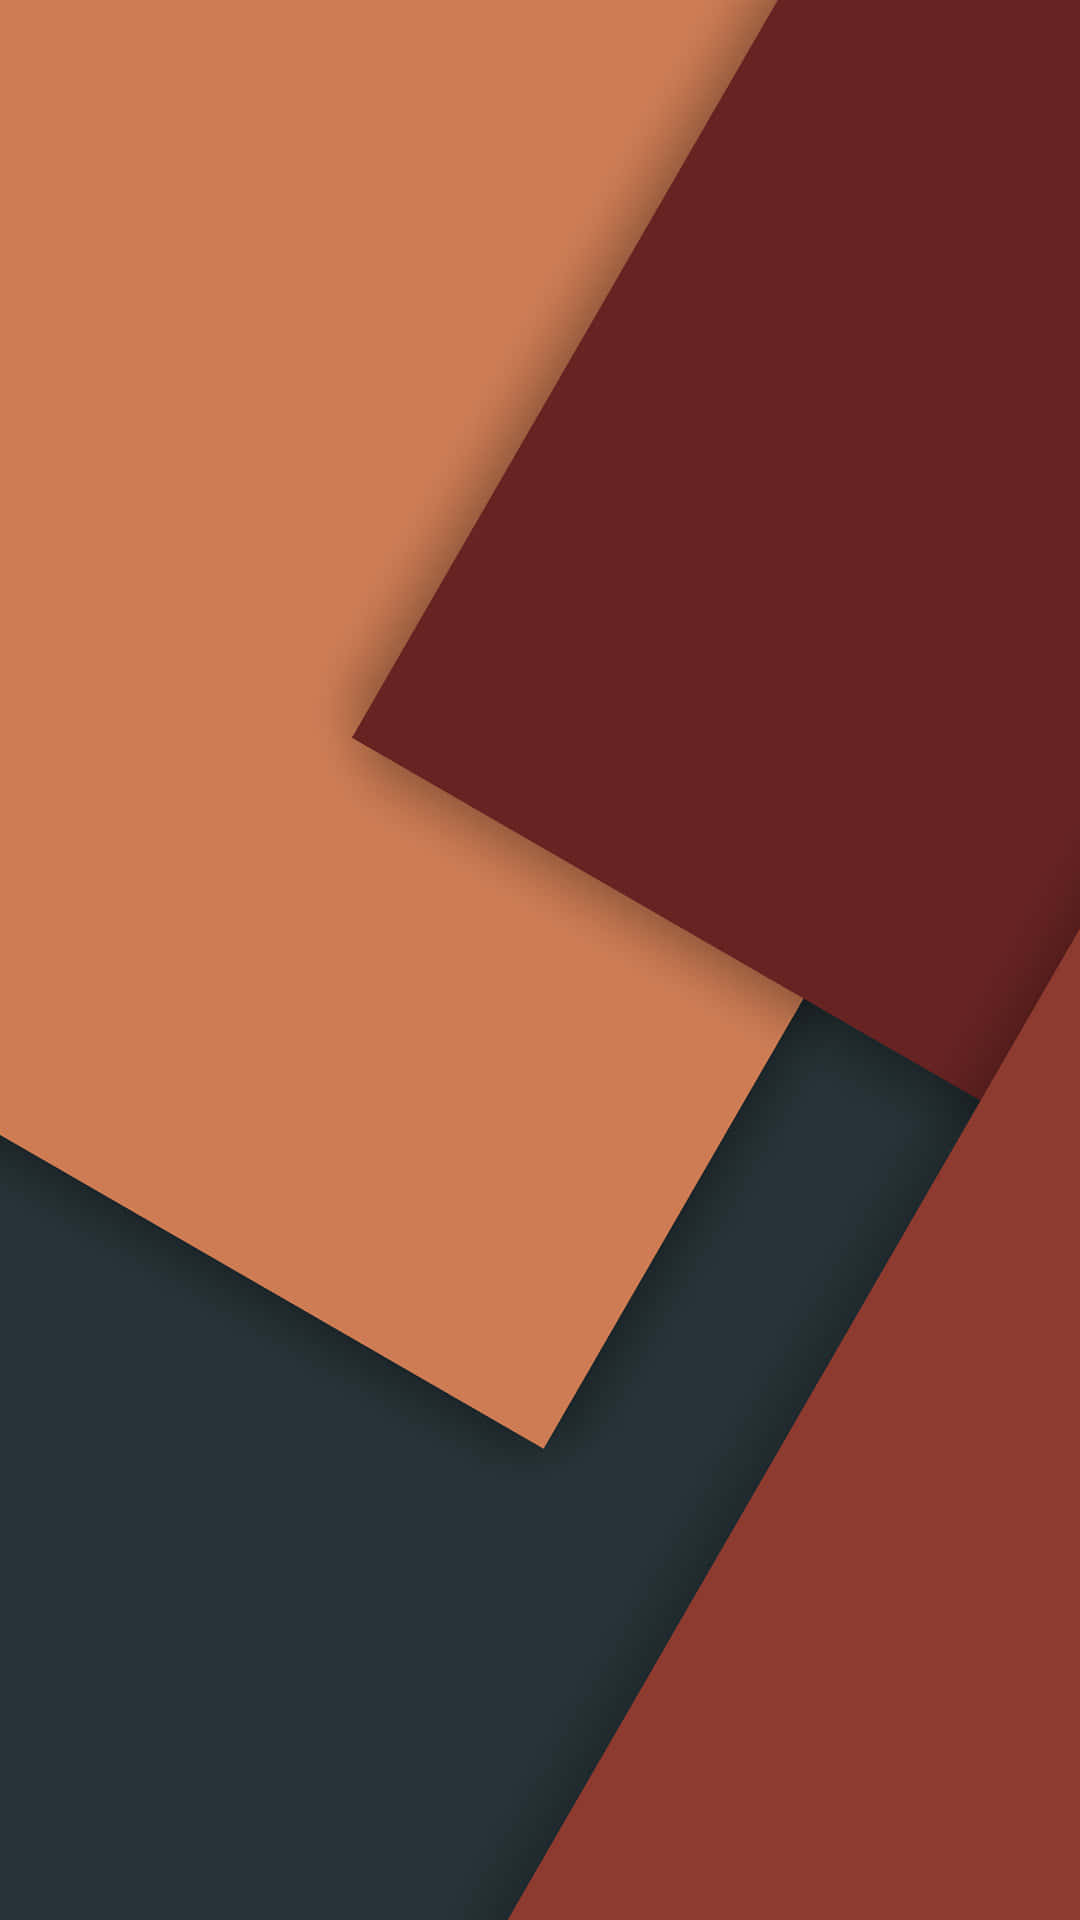 Einbuntes Hintergrundbild Mit Den Farben Rot, Orange Und Braun Wallpaper